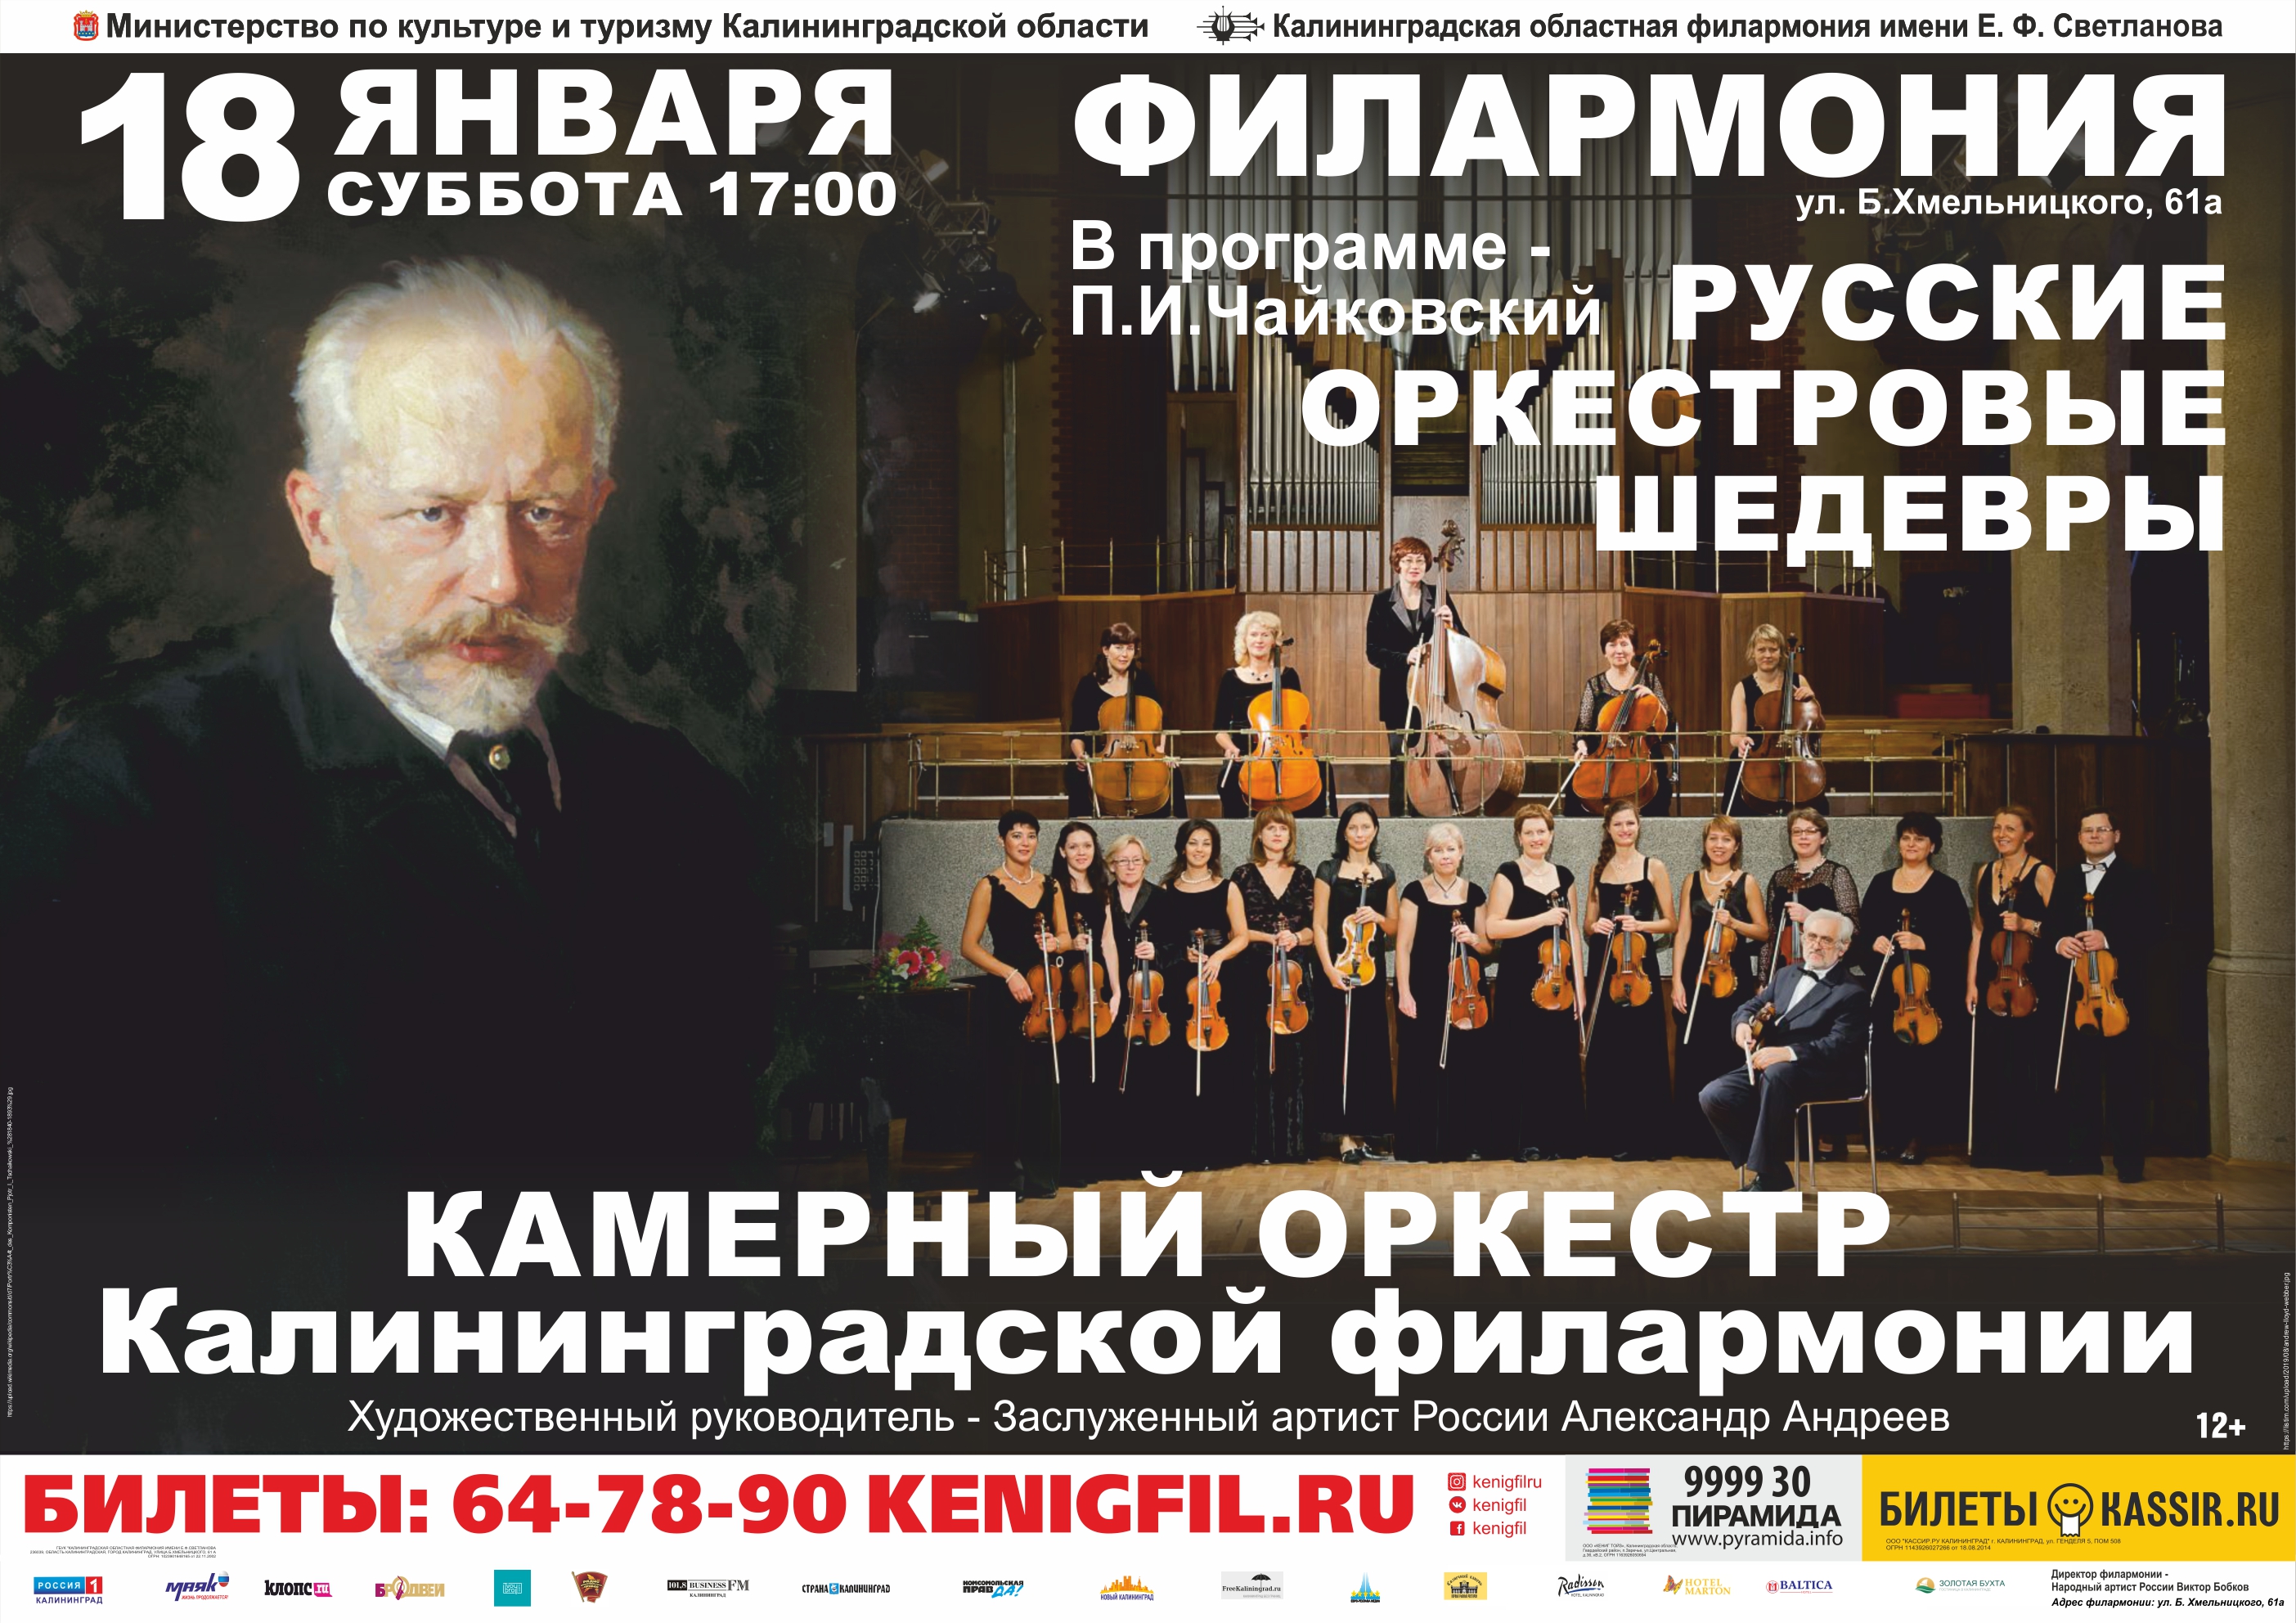 Концерт : «Русские оркестровые шедевры»